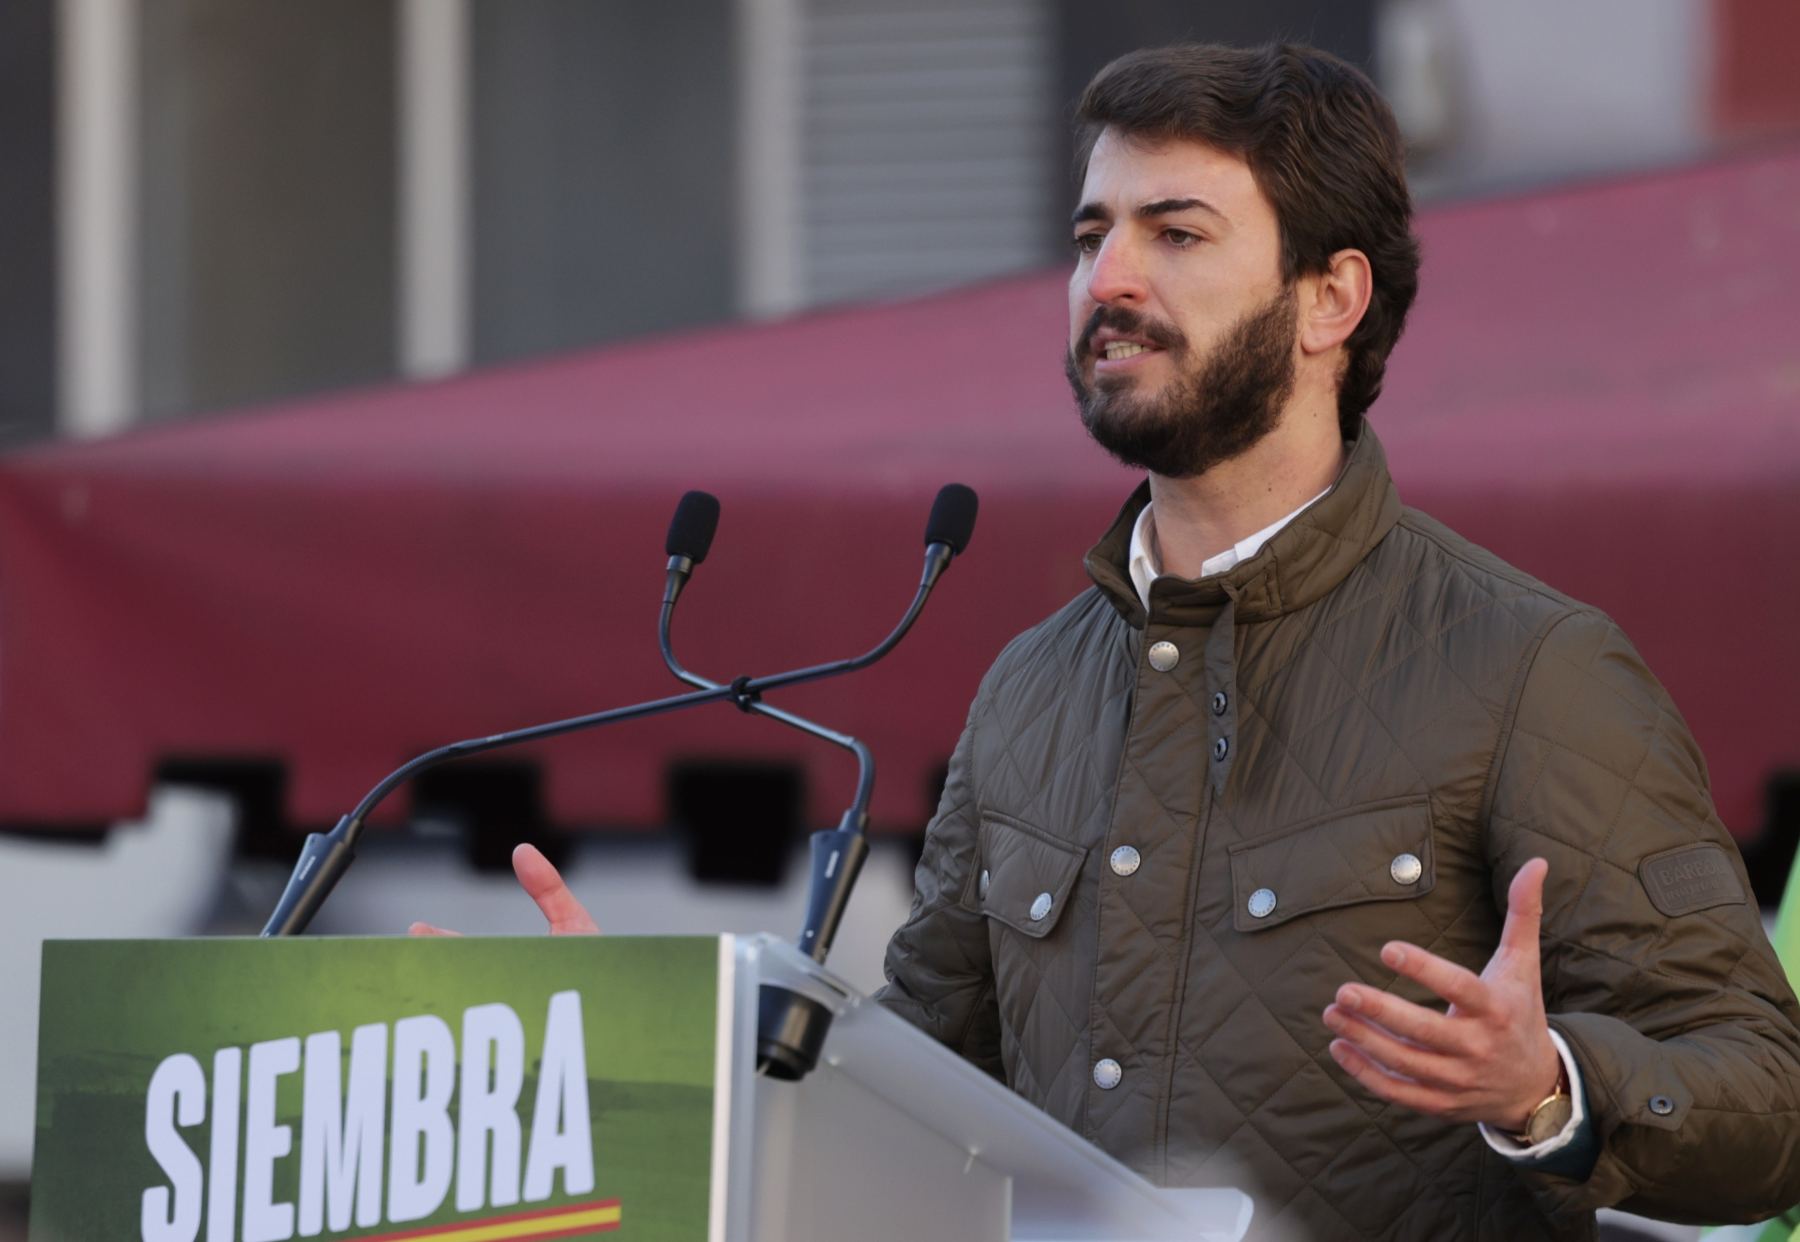 خوان غارسيا غاياردو زعيم حزب فوكس اليميني المتطرف في إسبانيا